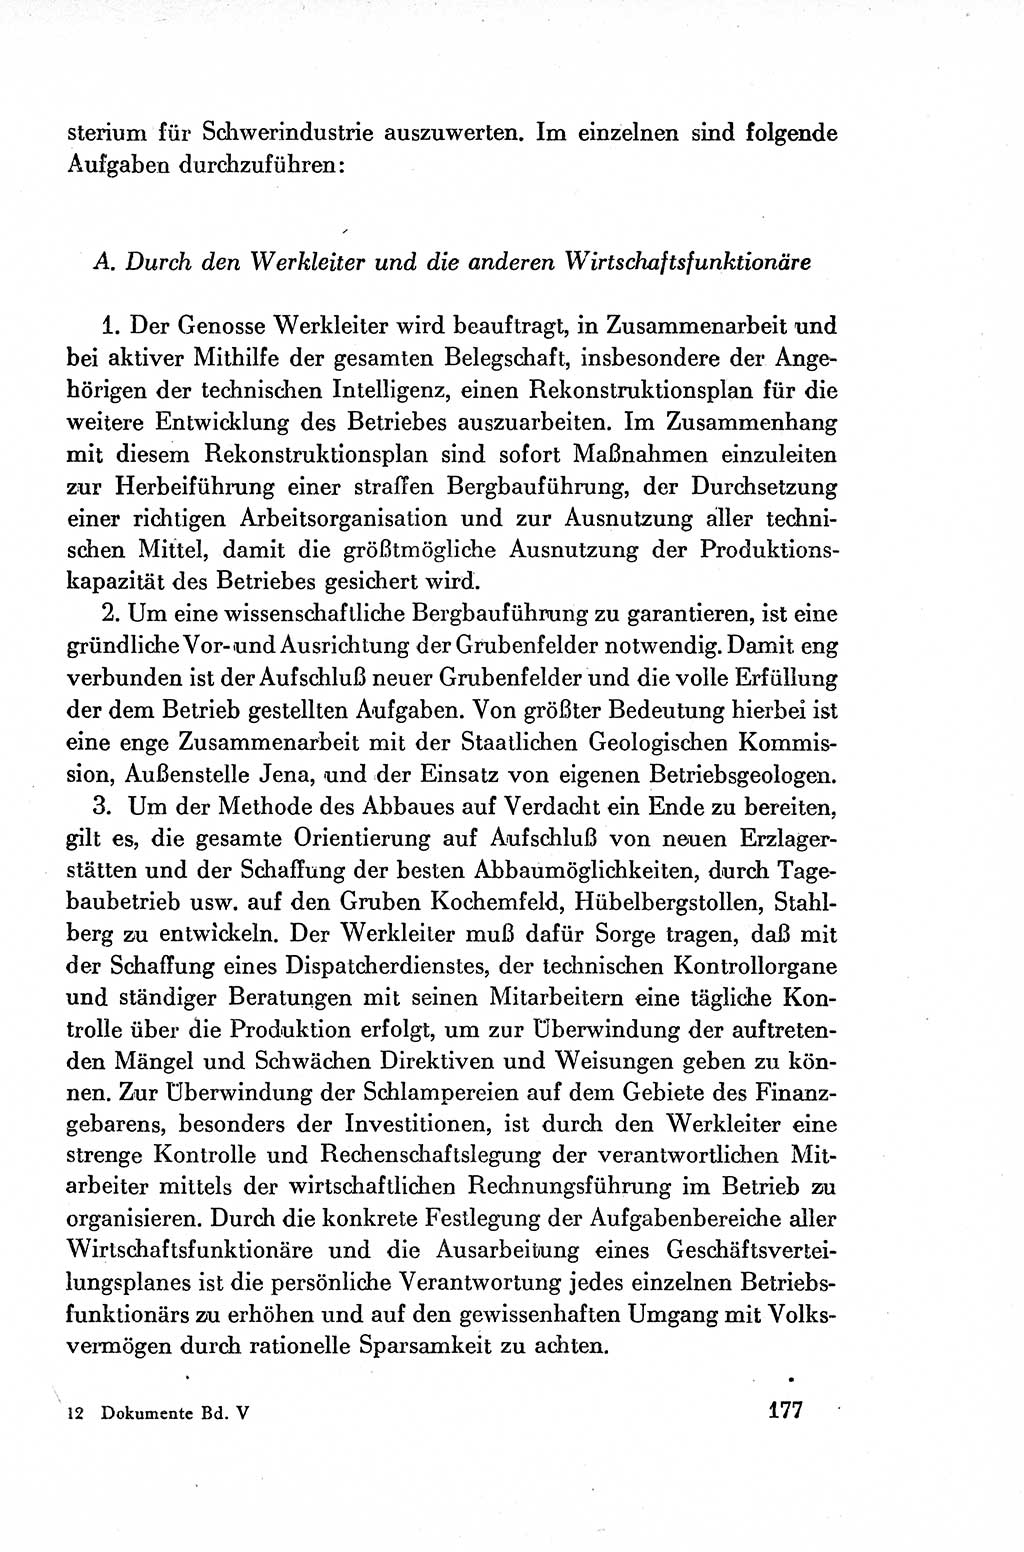 Dokumente der Sozialistischen Einheitspartei Deutschlands (SED) [Deutsche Demokratische Republik (DDR)] 1954-1955, Seite 177 (Dok. SED DDR 1954-1955, S. 177)